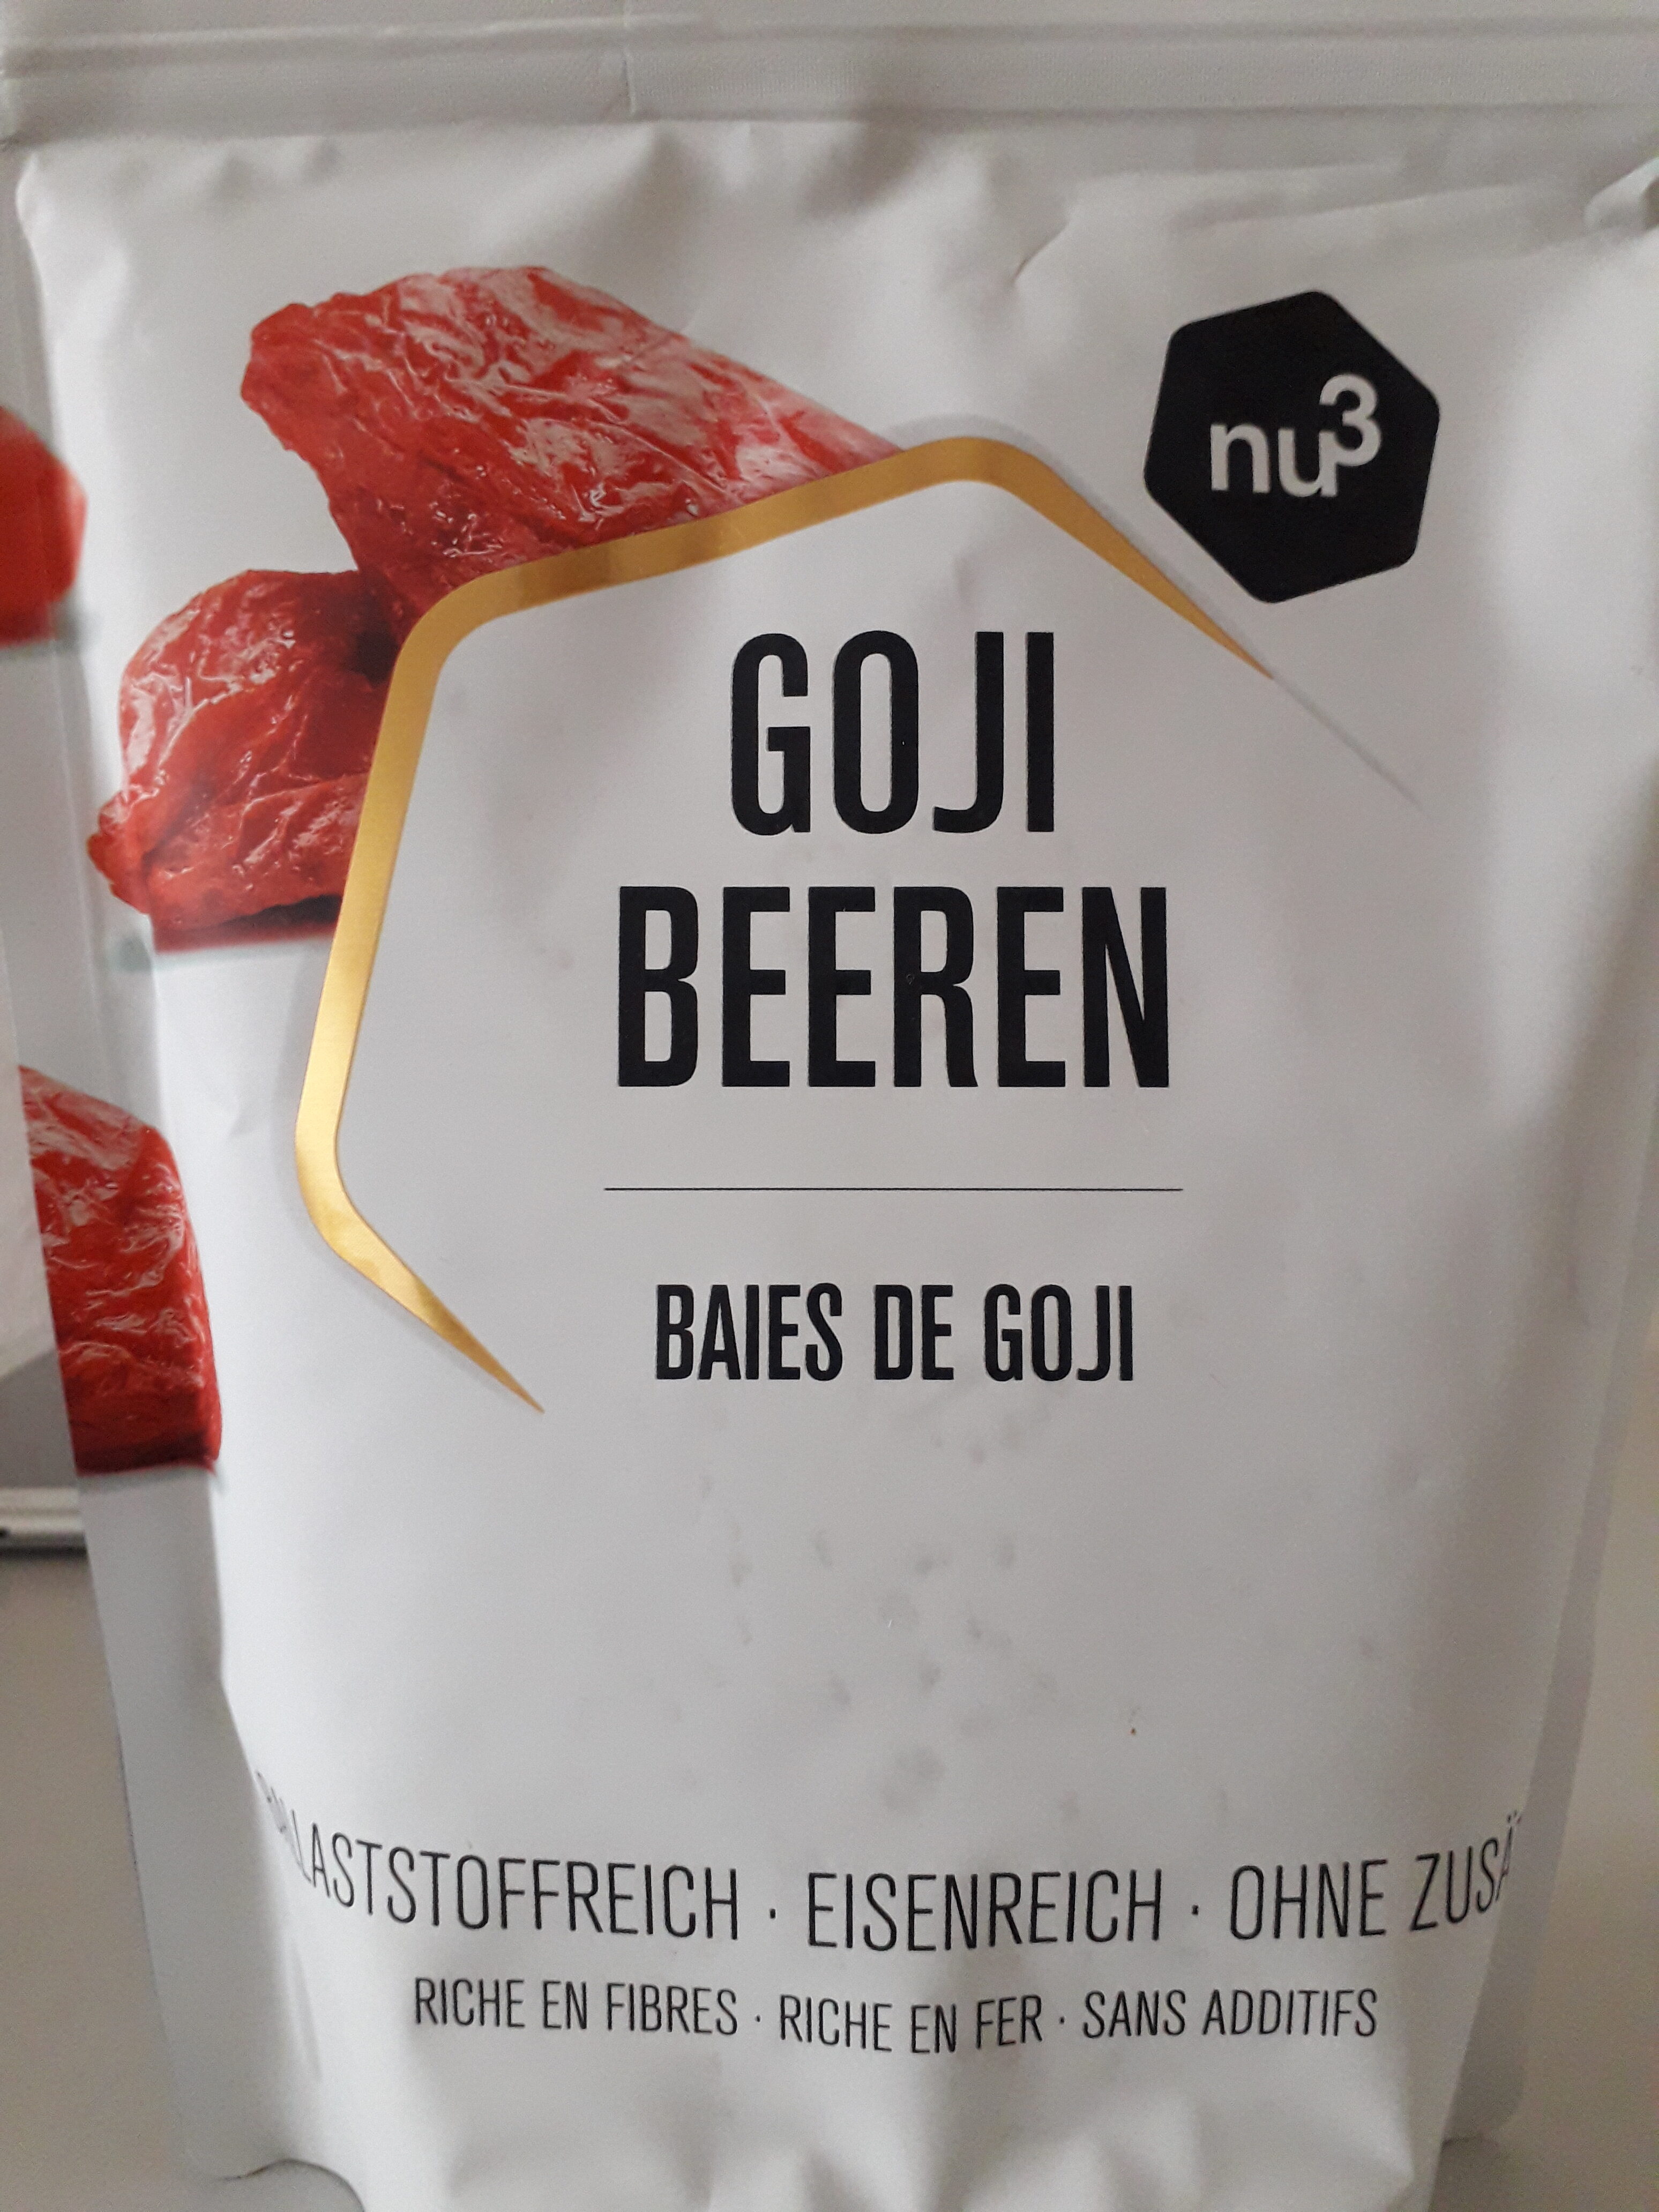 nu3 Goji Beeren - Produkt